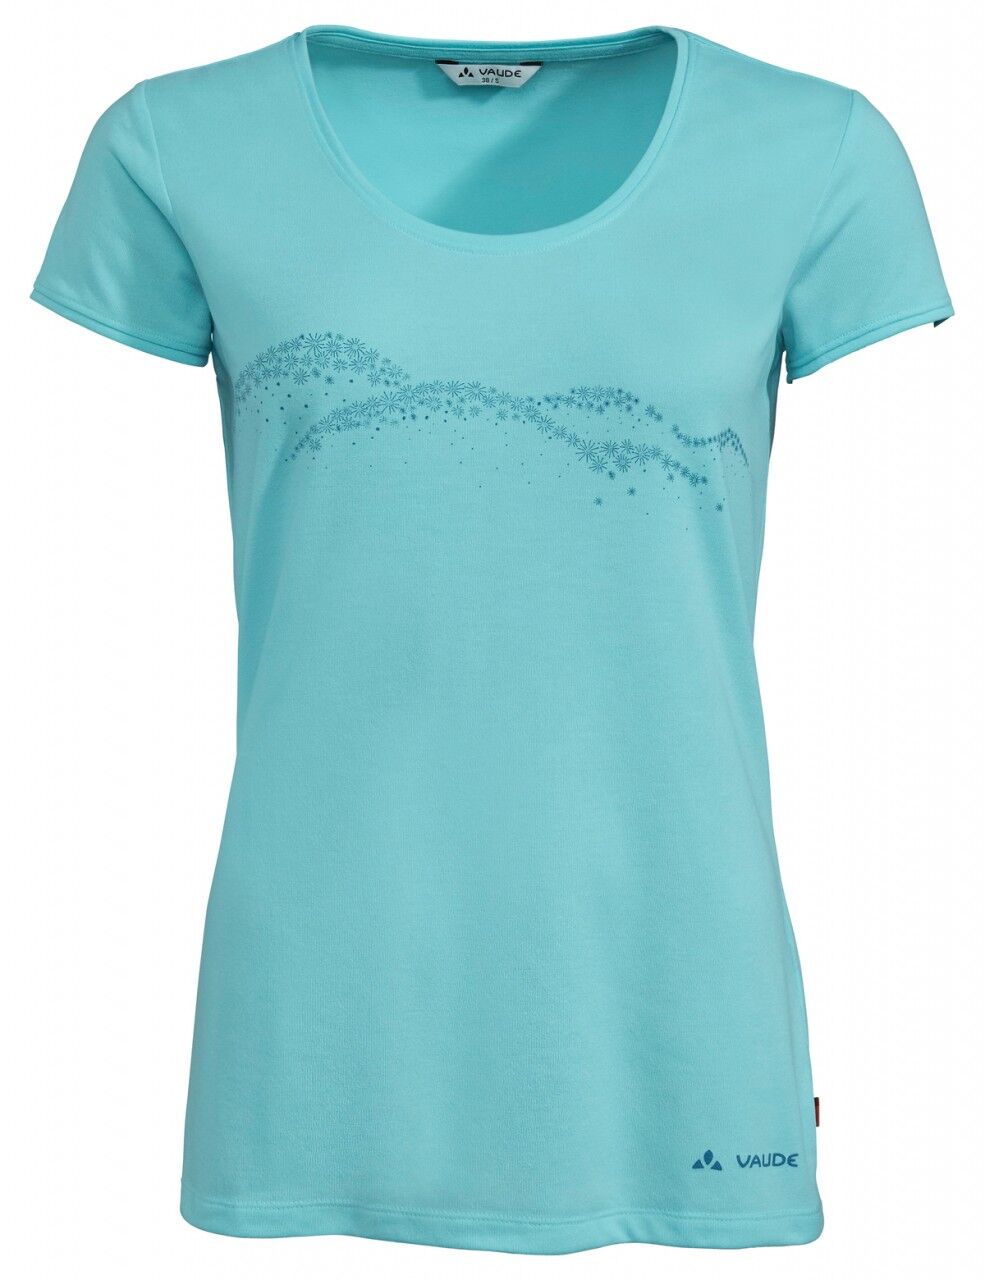 Vaude Gleann - T-shirt - Women's